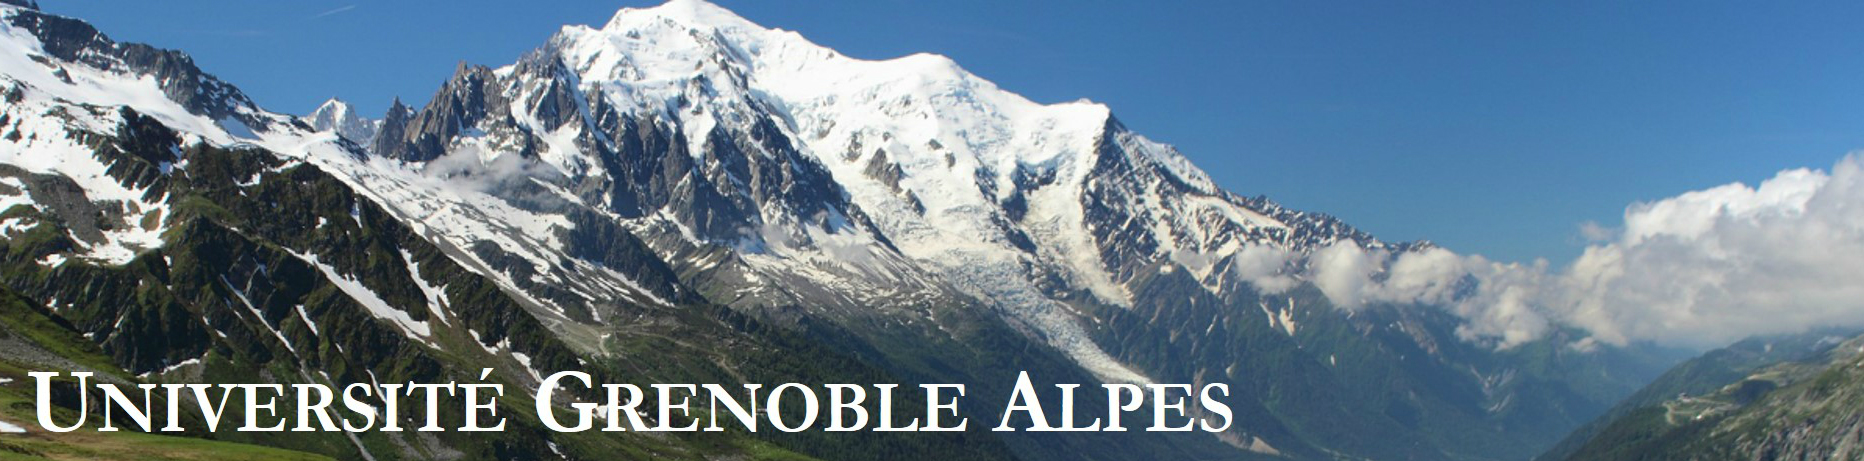 Grenoble Alpes banner